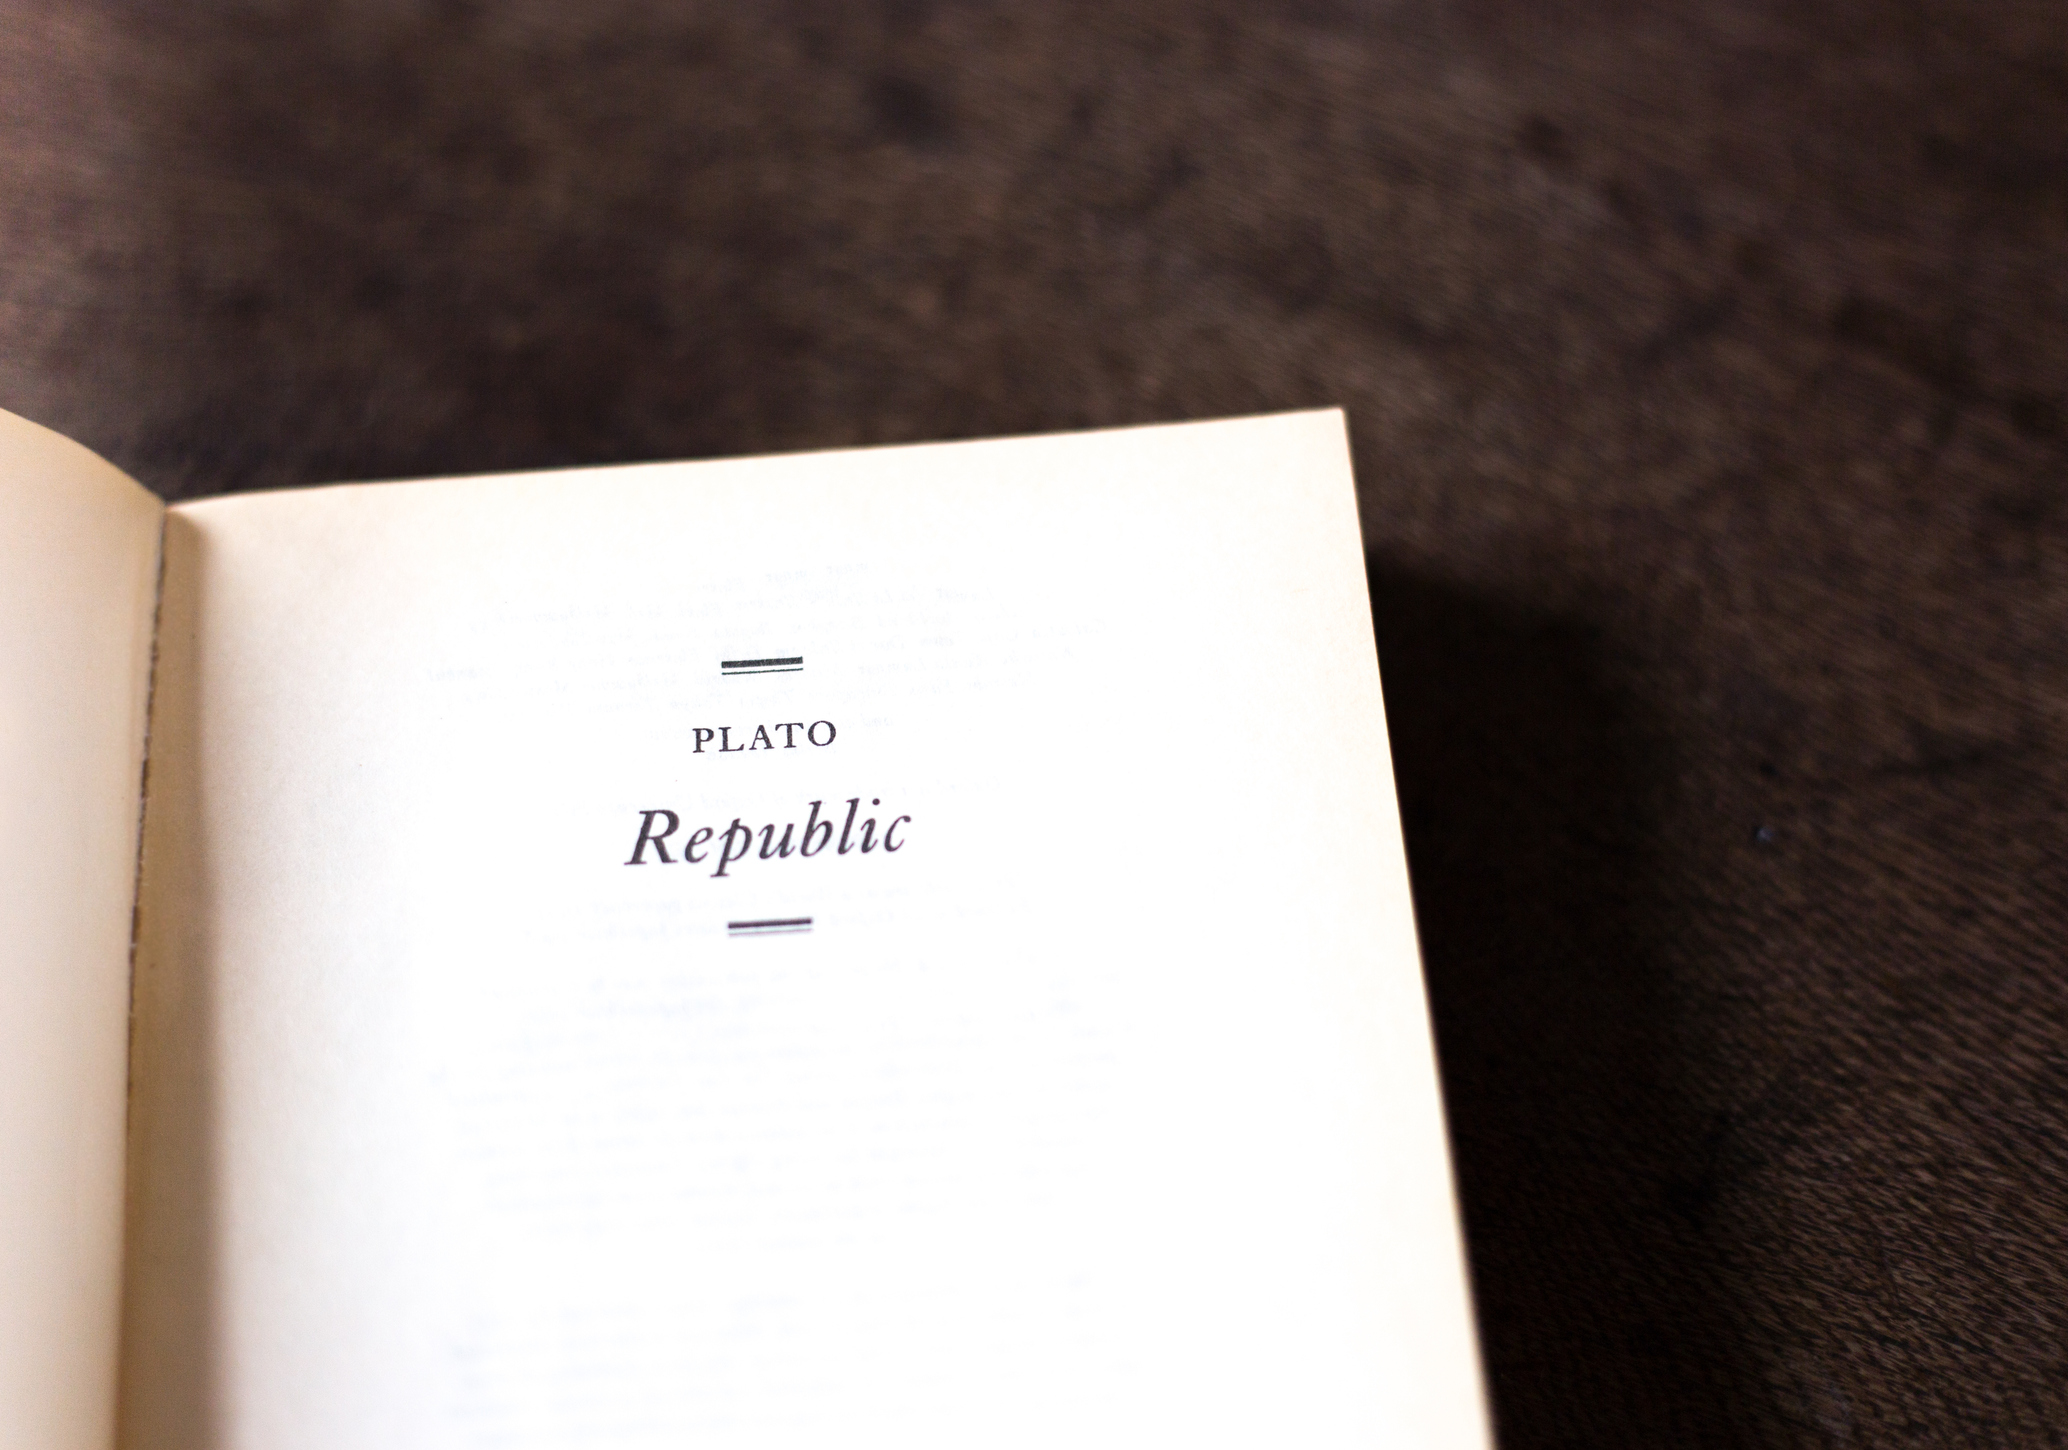 Plato's Republic book